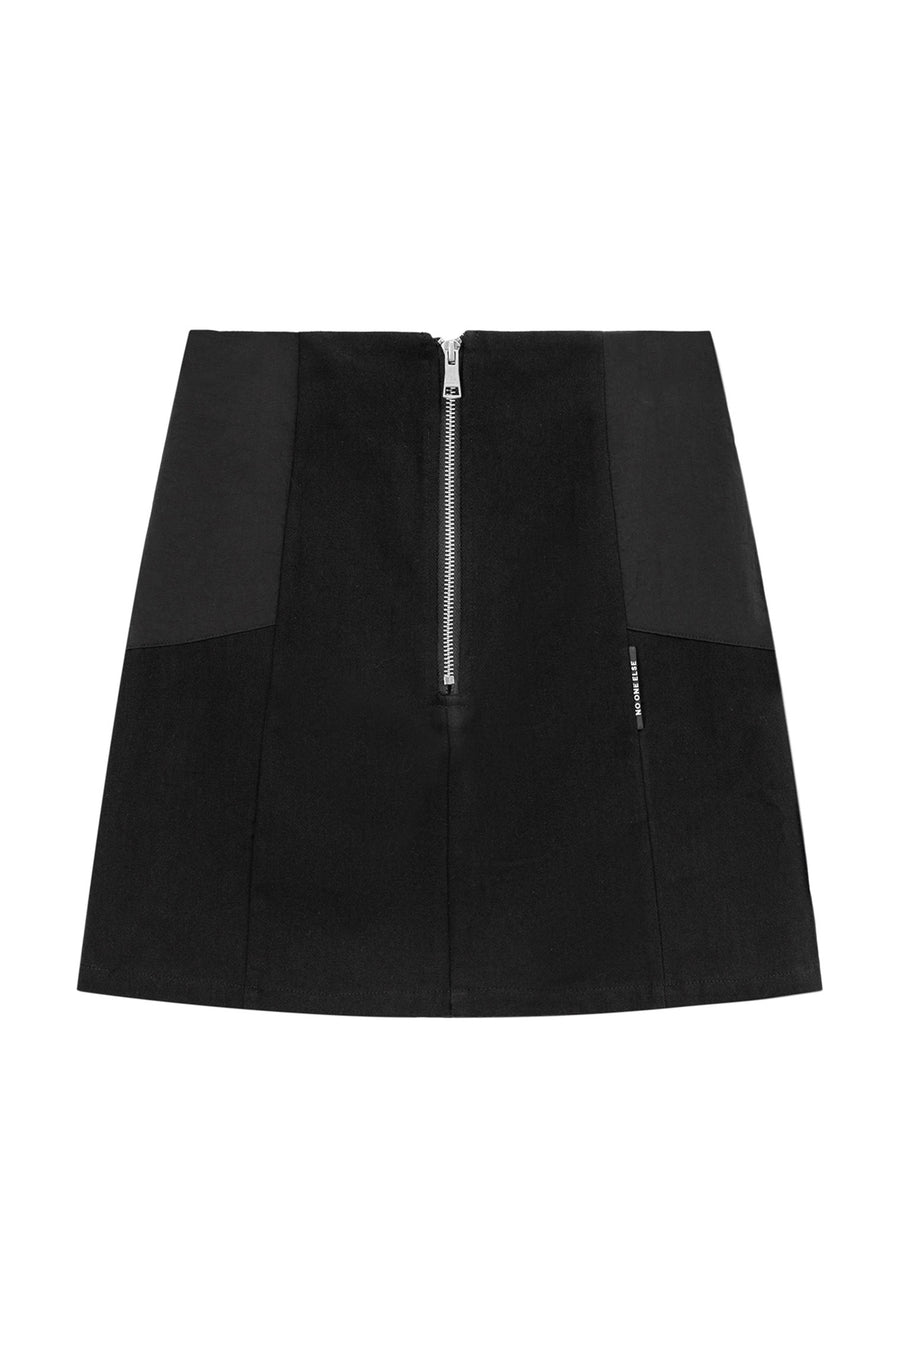 CHUU Basic A-Line Skirt